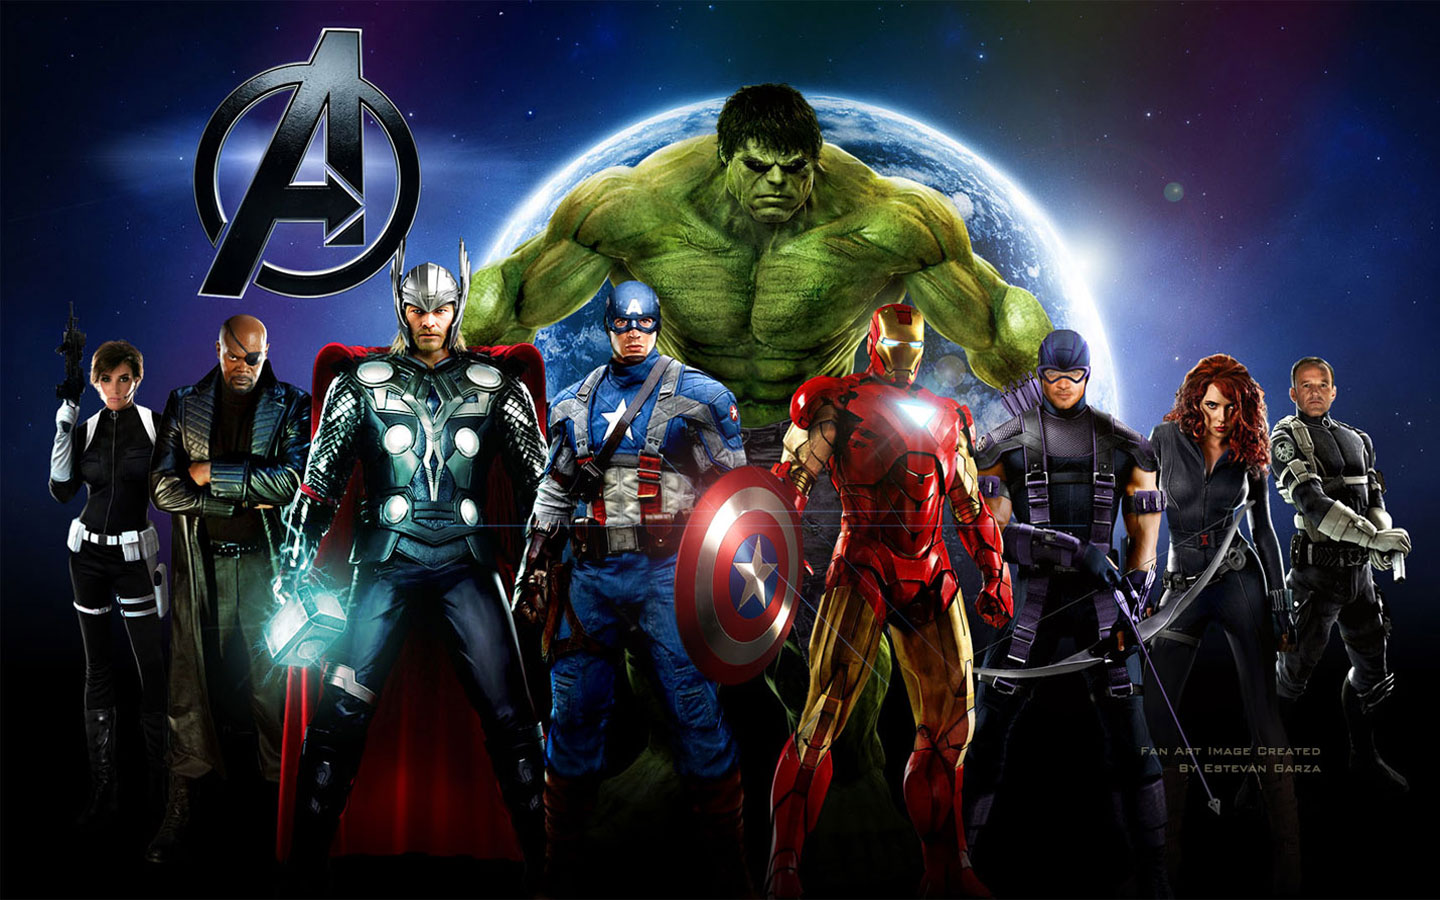 http://3.bp.blogspot.com/-4XxMpSda3Zk/T668vrdunTI/AAAAAAAABc4/jS6faKvuAWM/s1600/The-Avengers-Movie-Widescreen-Wallpaper.jpg